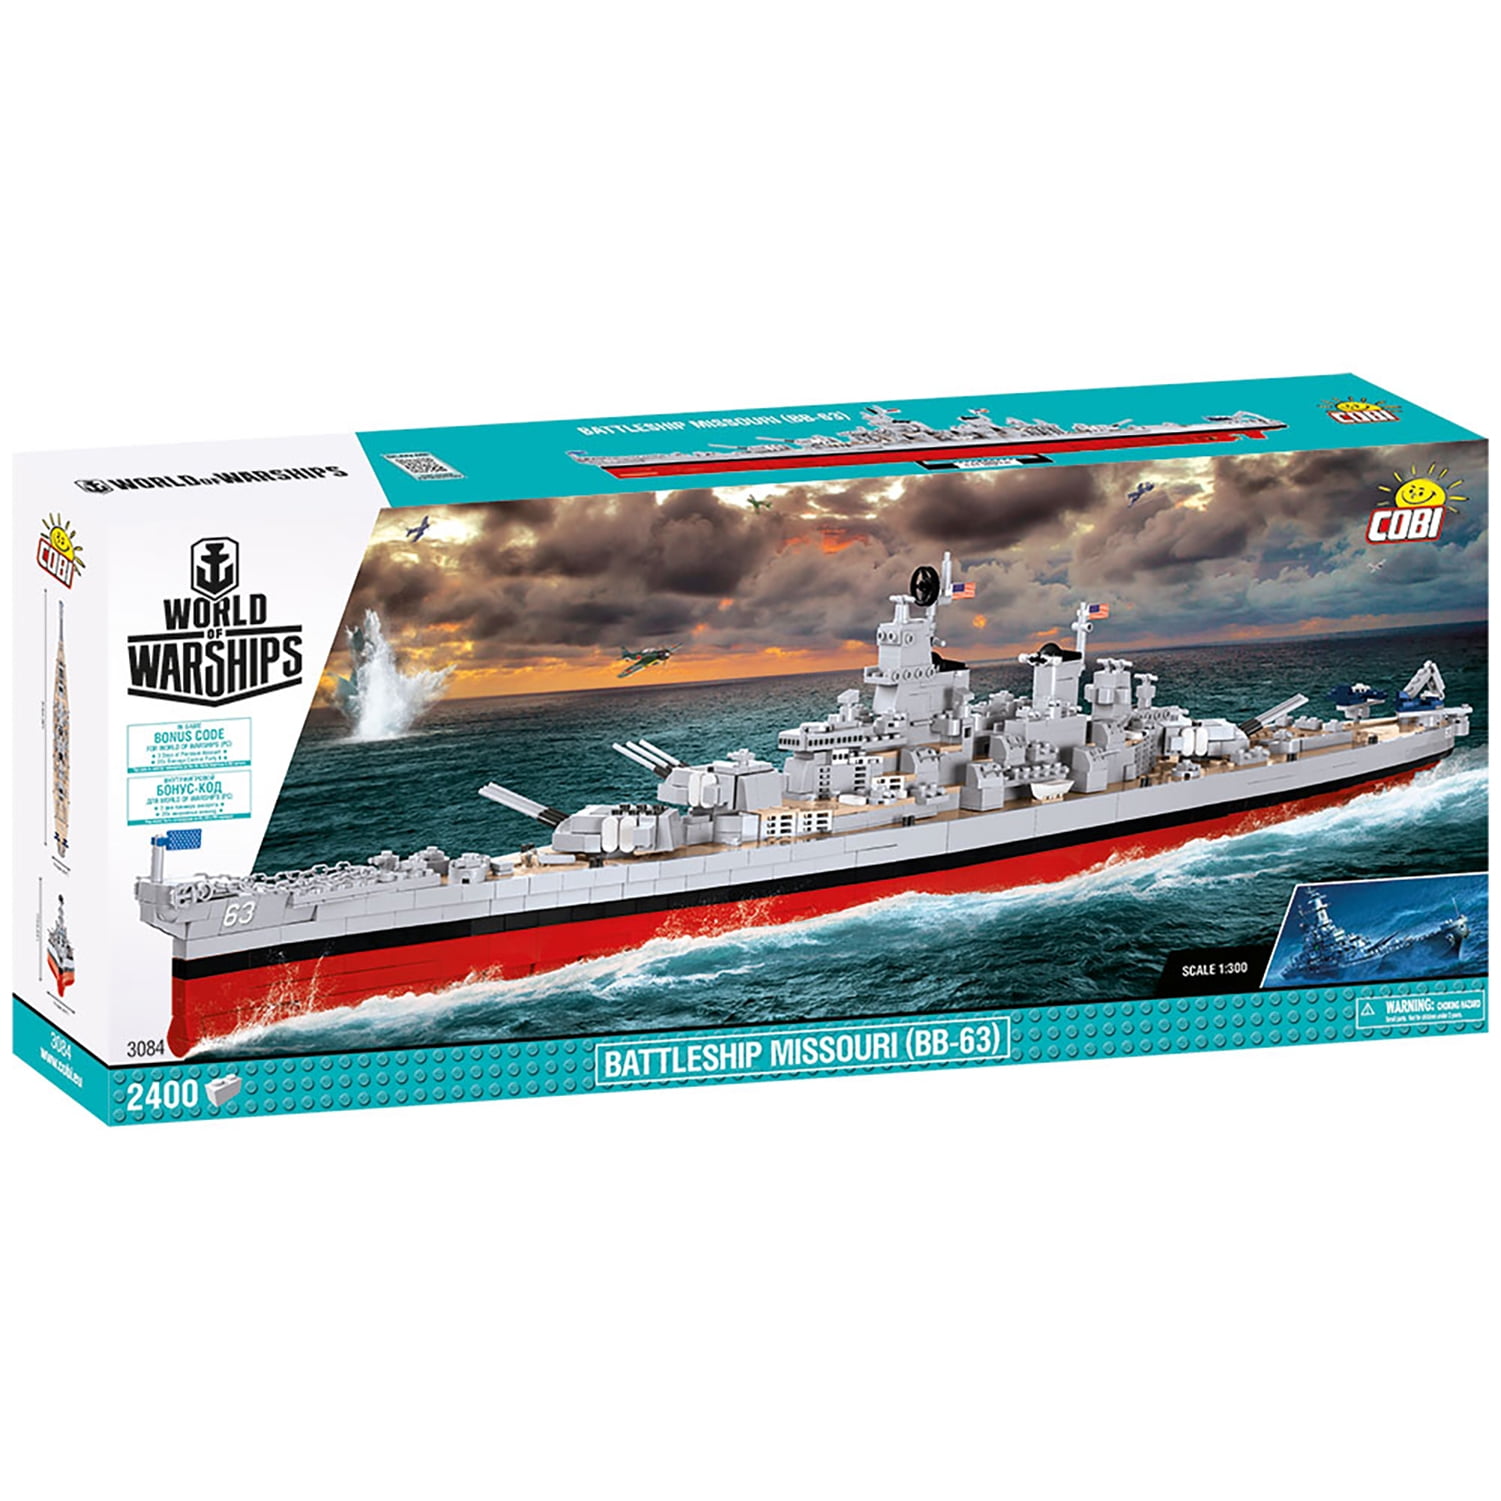 Cobi World Of Warships Battleship Yamato Ubicaciondepersonas Cdmx Gob Mx